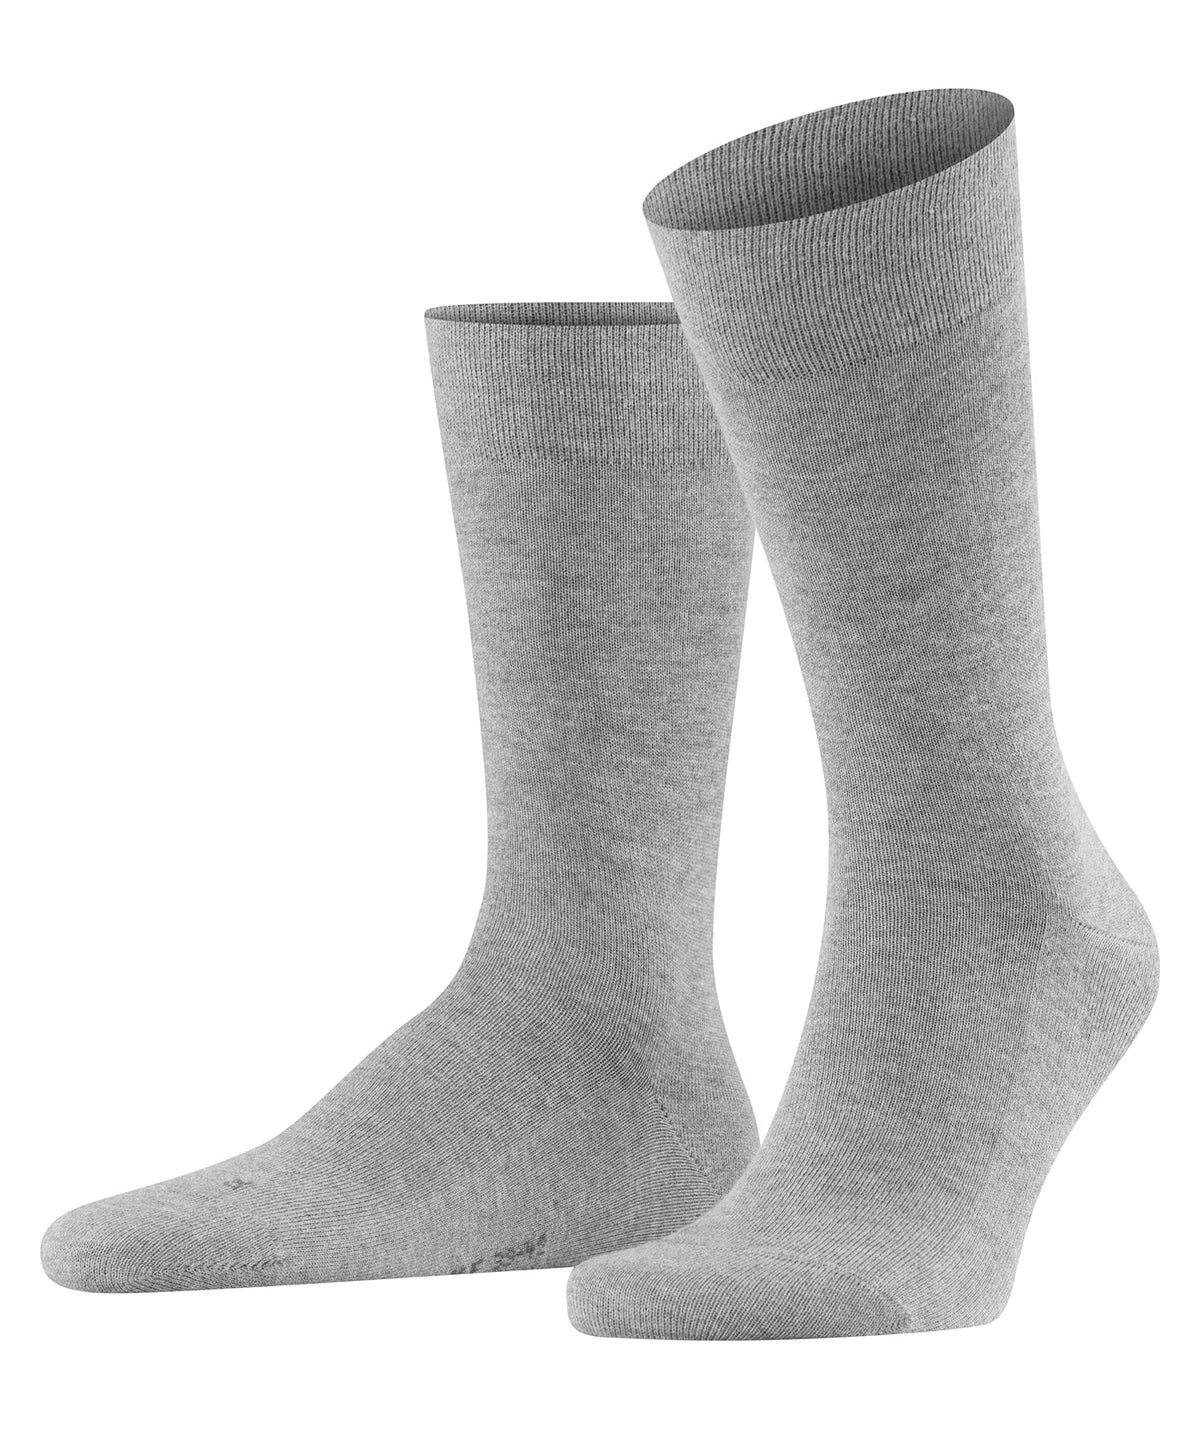 Falke Non Binding Socks